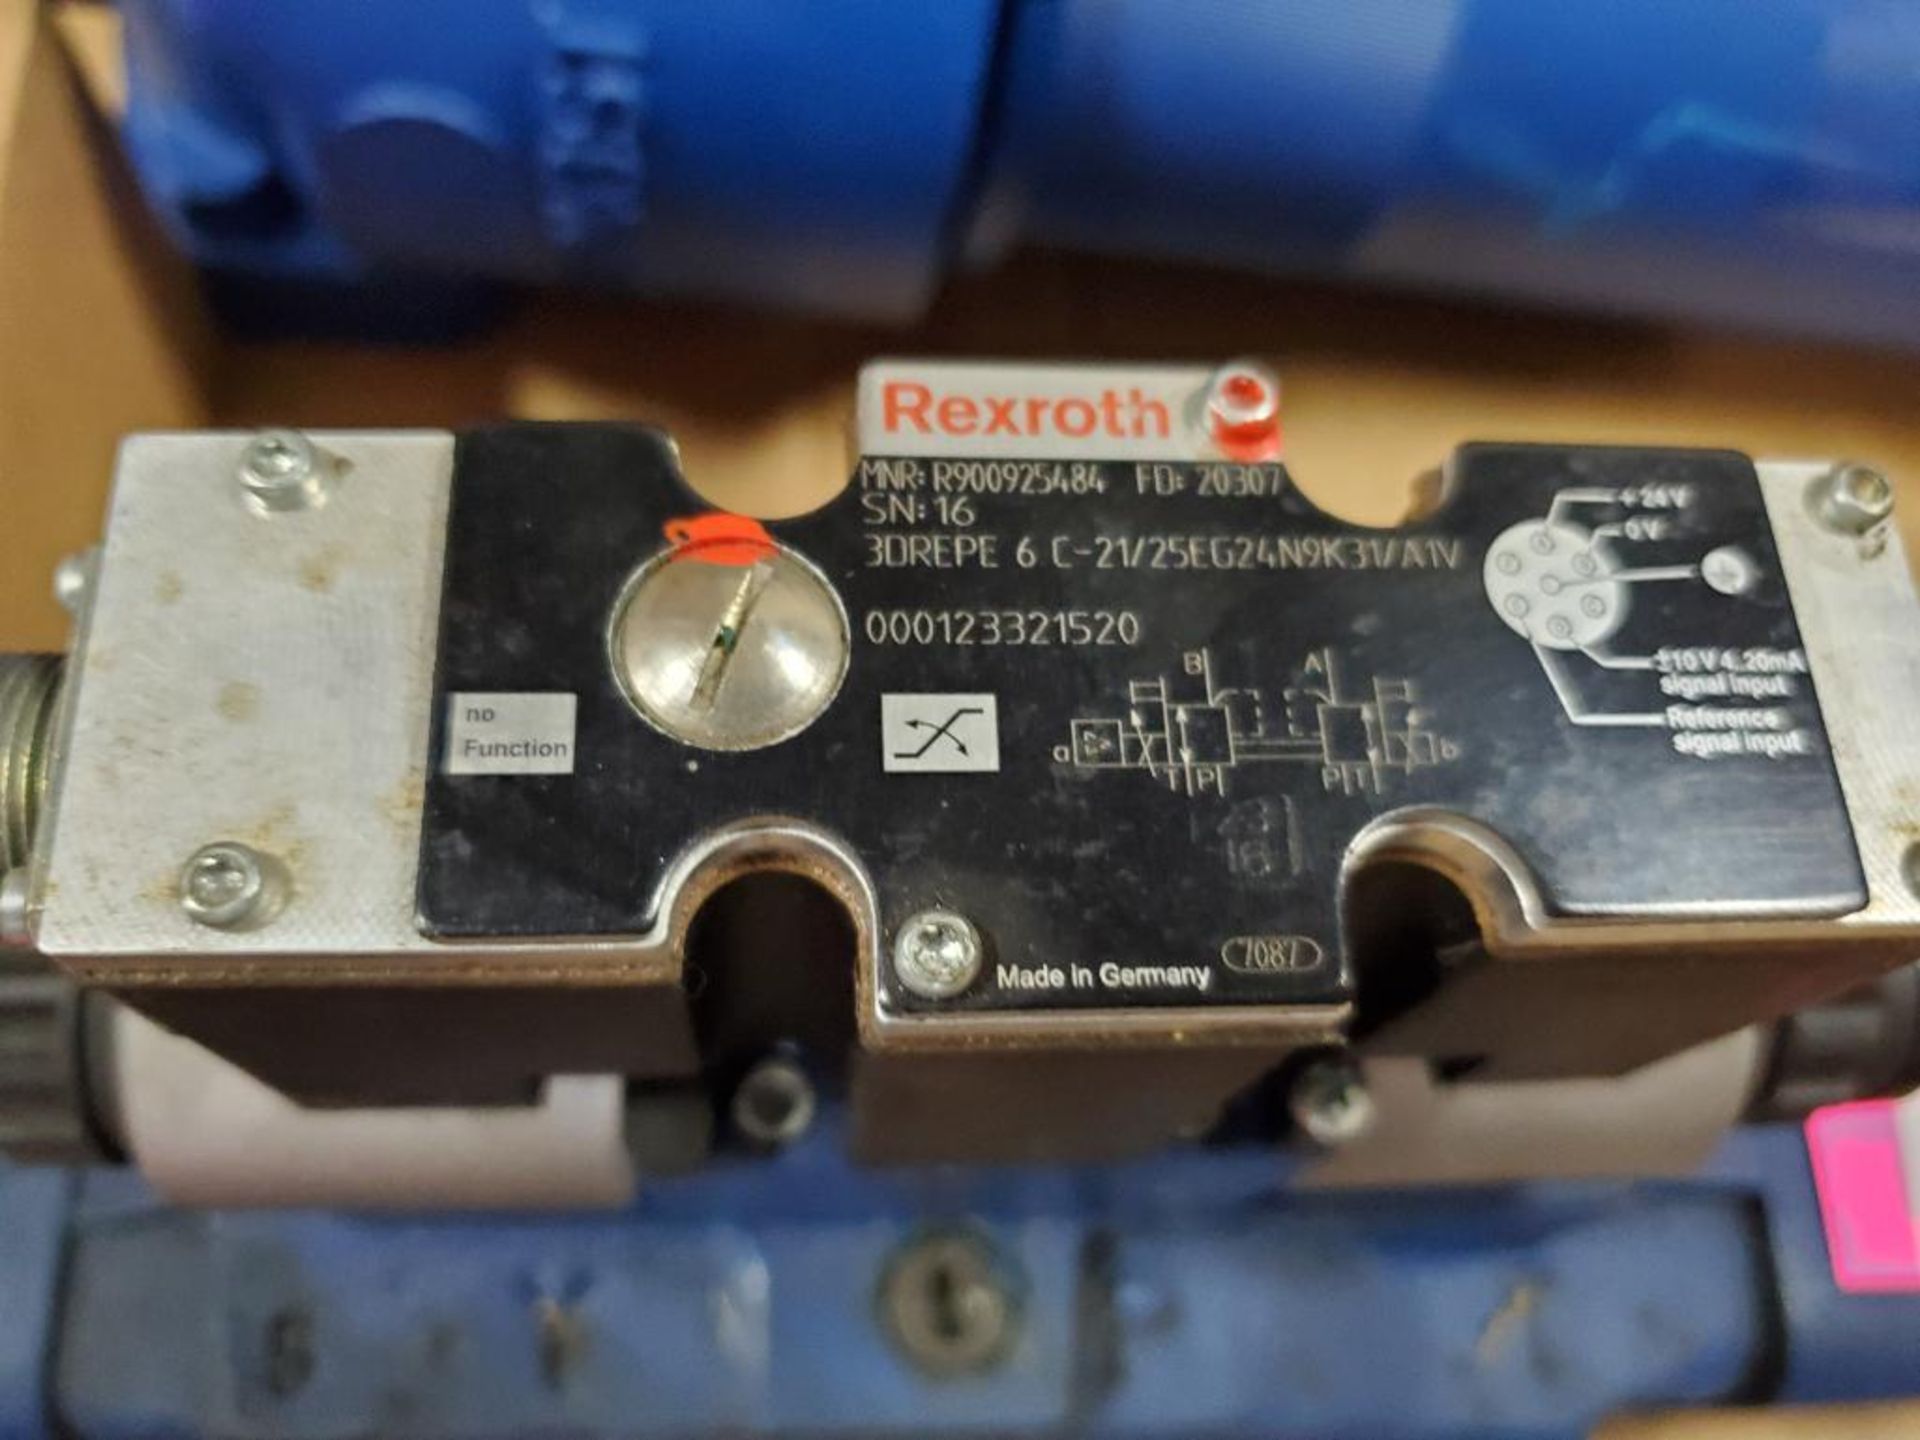 Rexroth R978021298 Hydraulic valve. 4WRZE32W8-520-70/6EG24N9K31/A1V. - Image 3 of 8